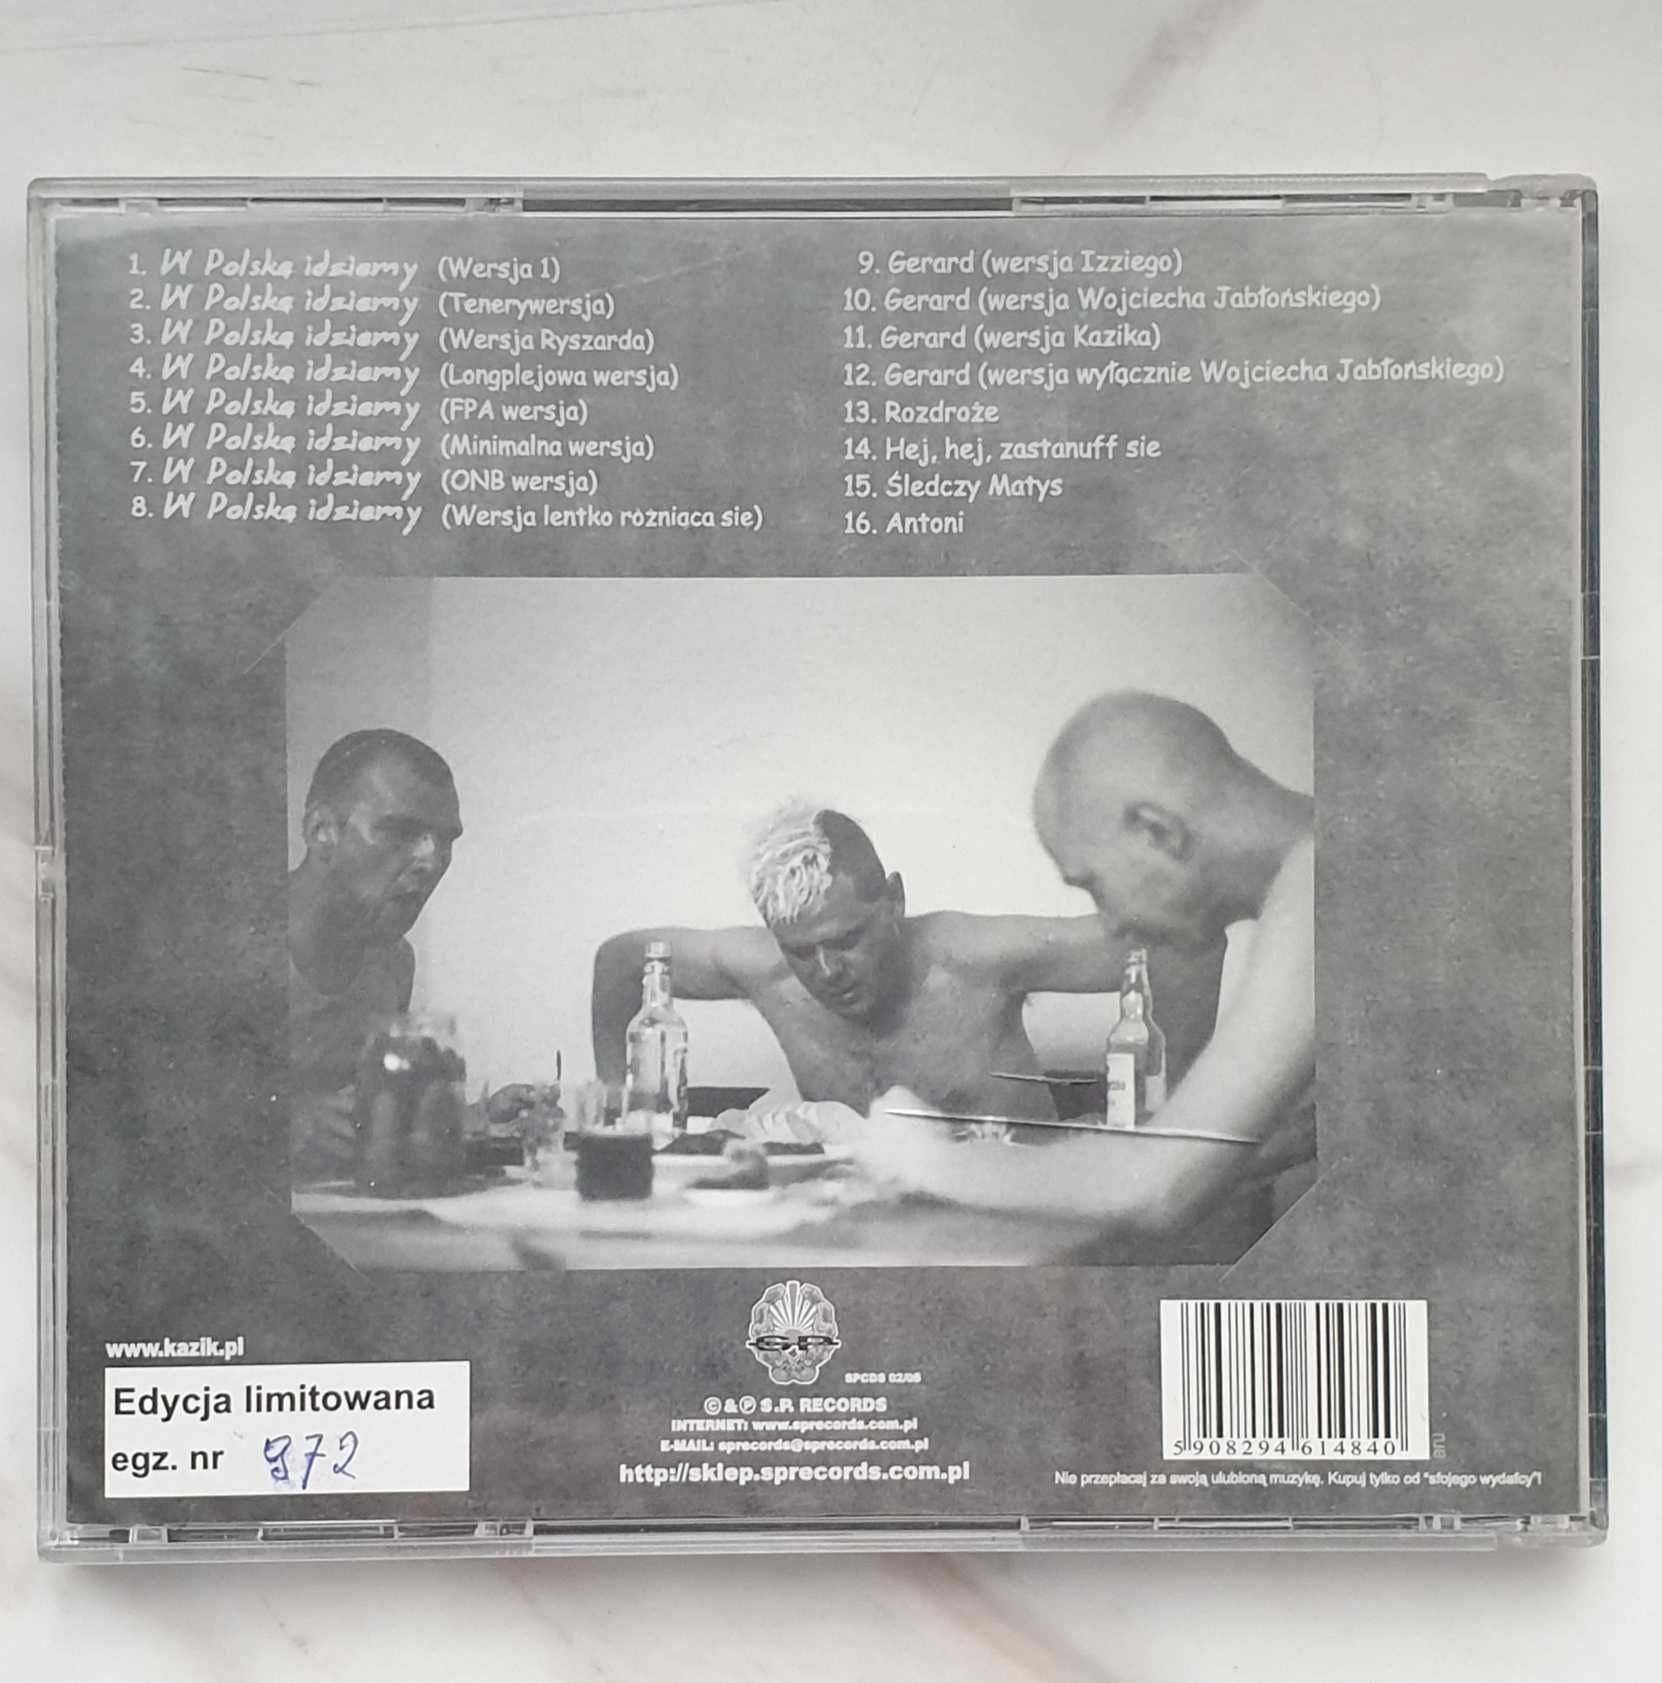 Kazik - singiel - W Polskę idziemy - edycja limitowana SPCDS 02/05